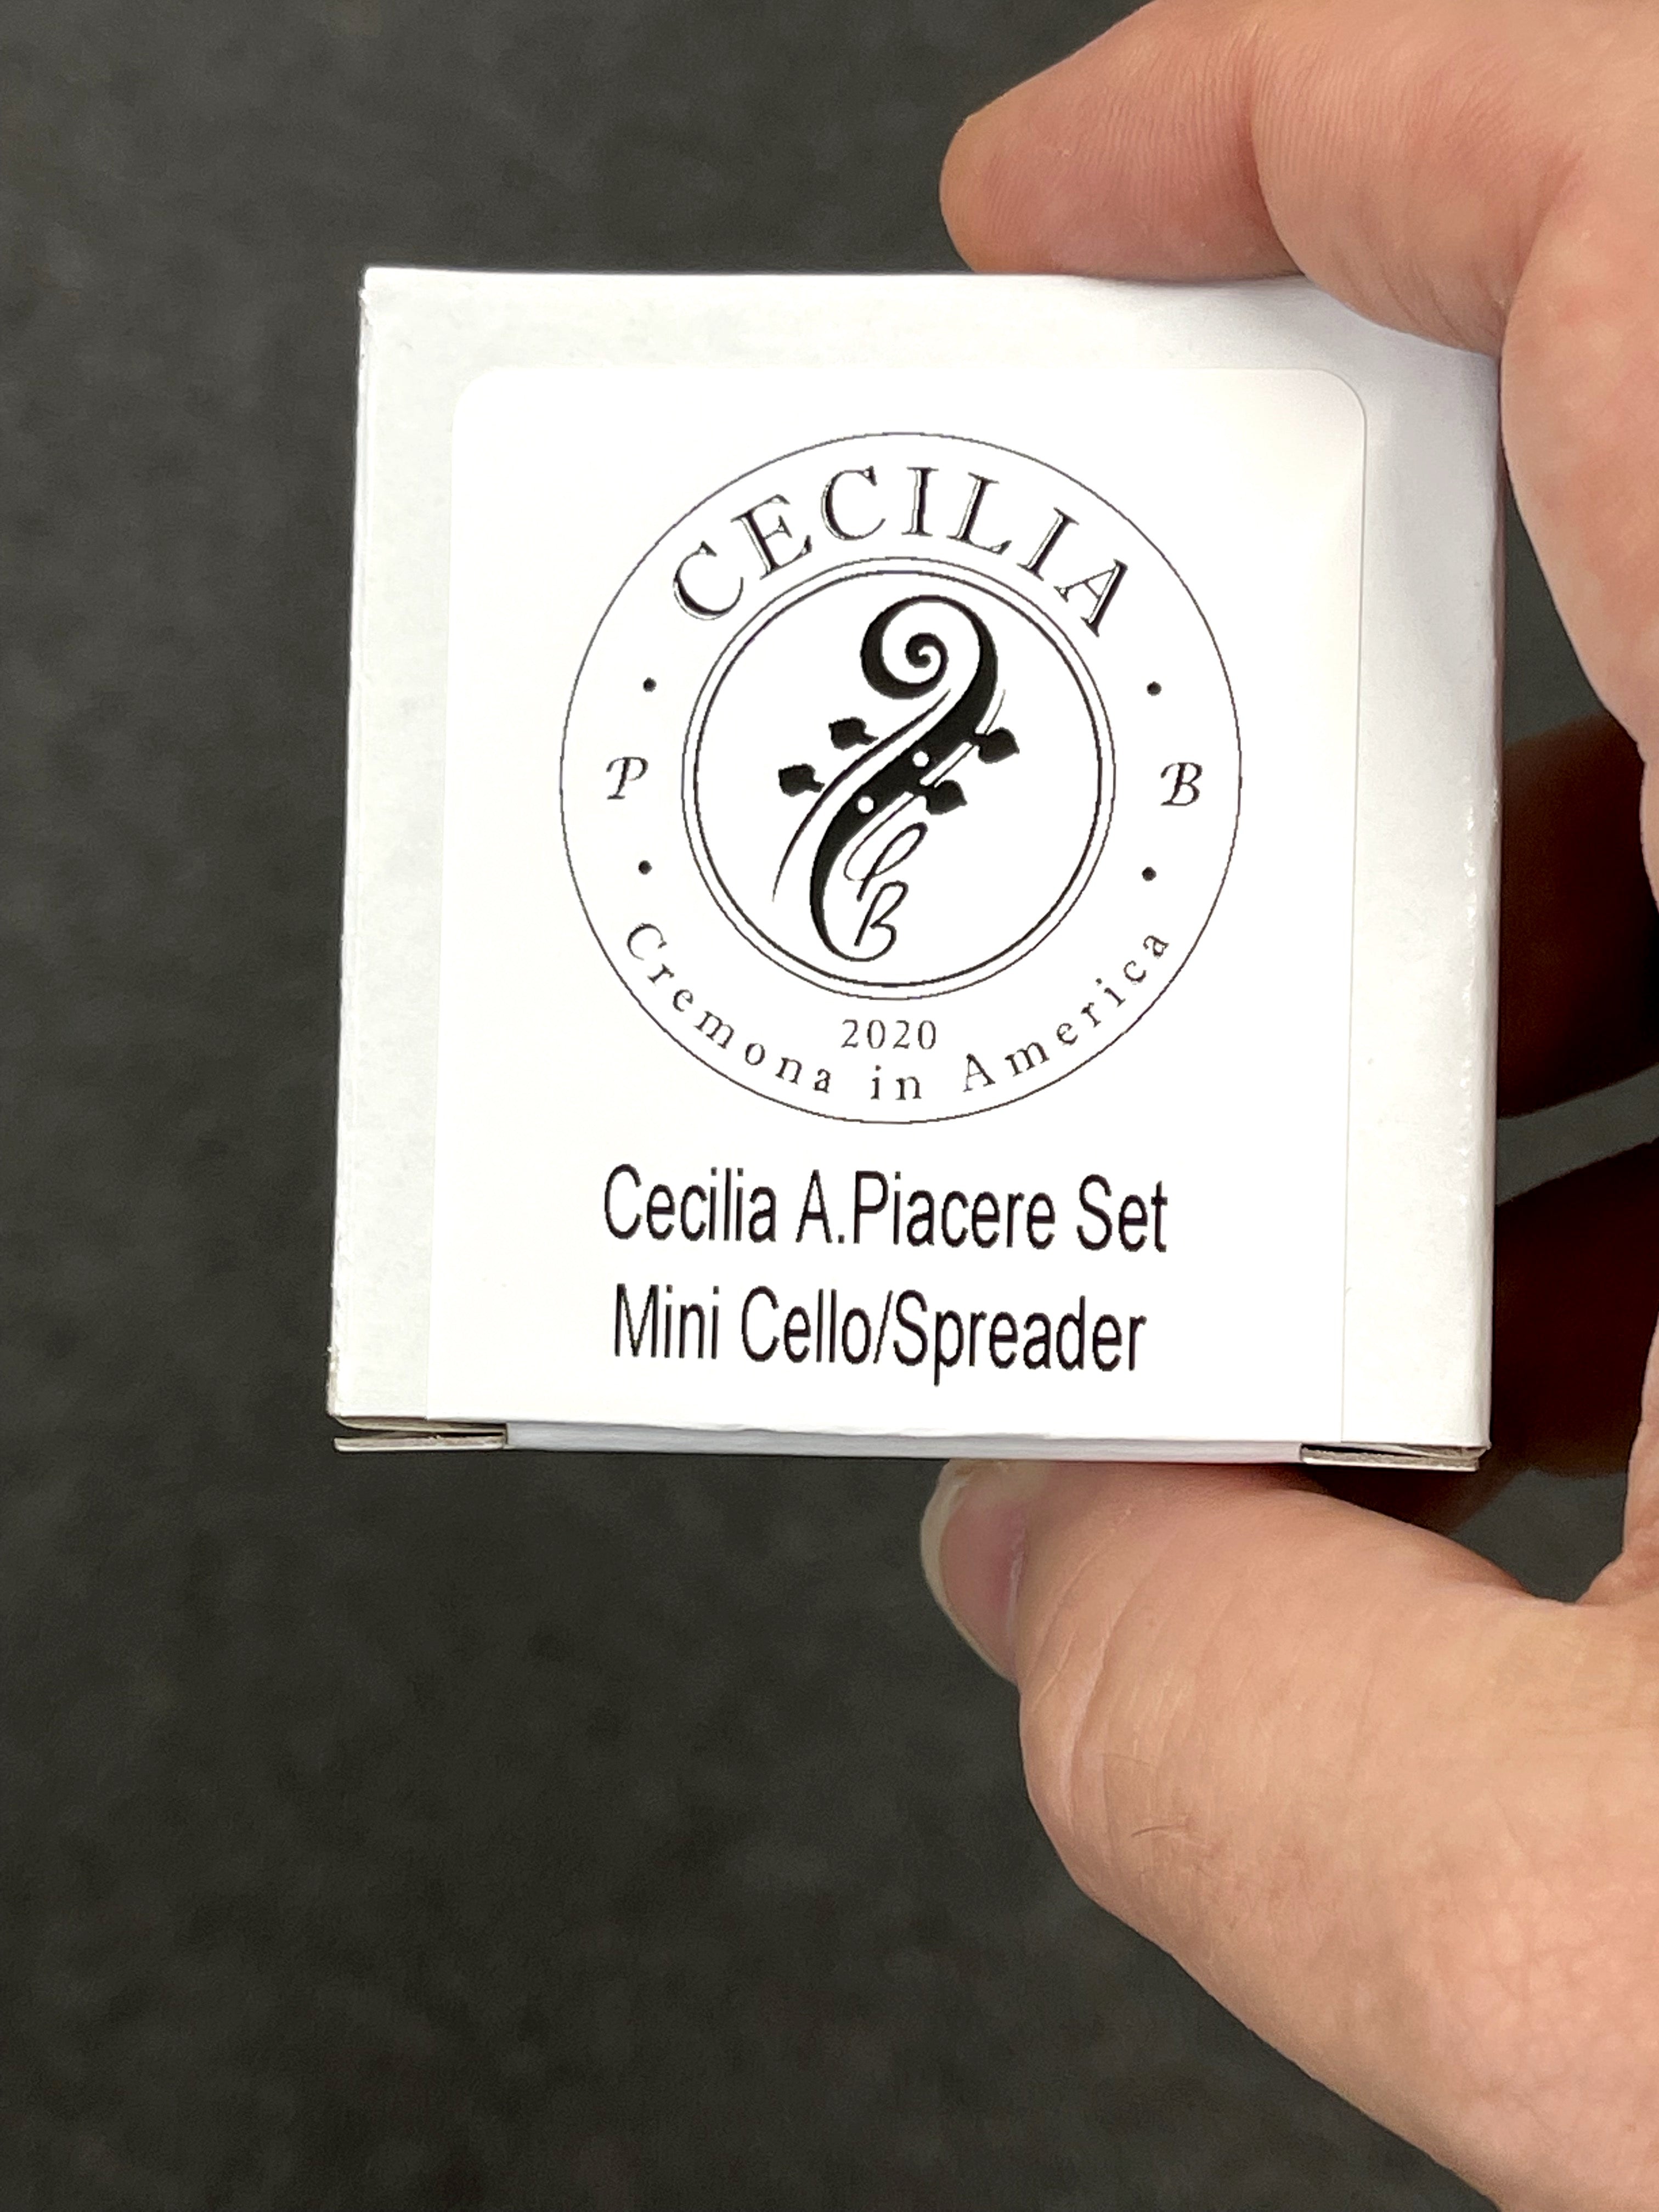 CECILIA A. Piacere Cello MINI with Spreader